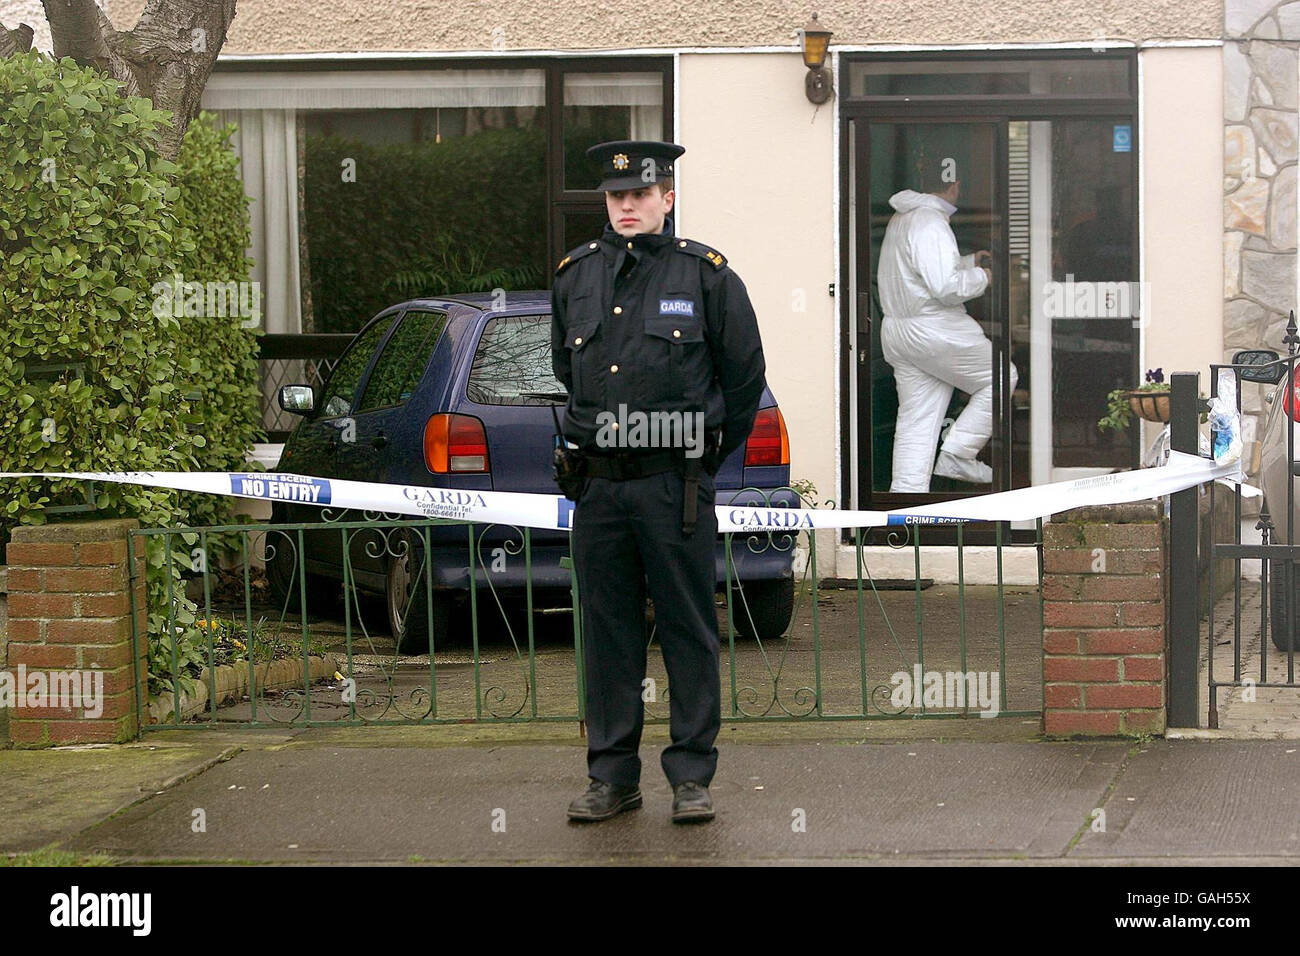 Mann nach bewaffnetem Raub festgehalten. Gardai-Offiziere durchsuchen in Dublin, Irland, ein Familienhaus, in dem ein versuchten Raub stattfand. Stockfoto